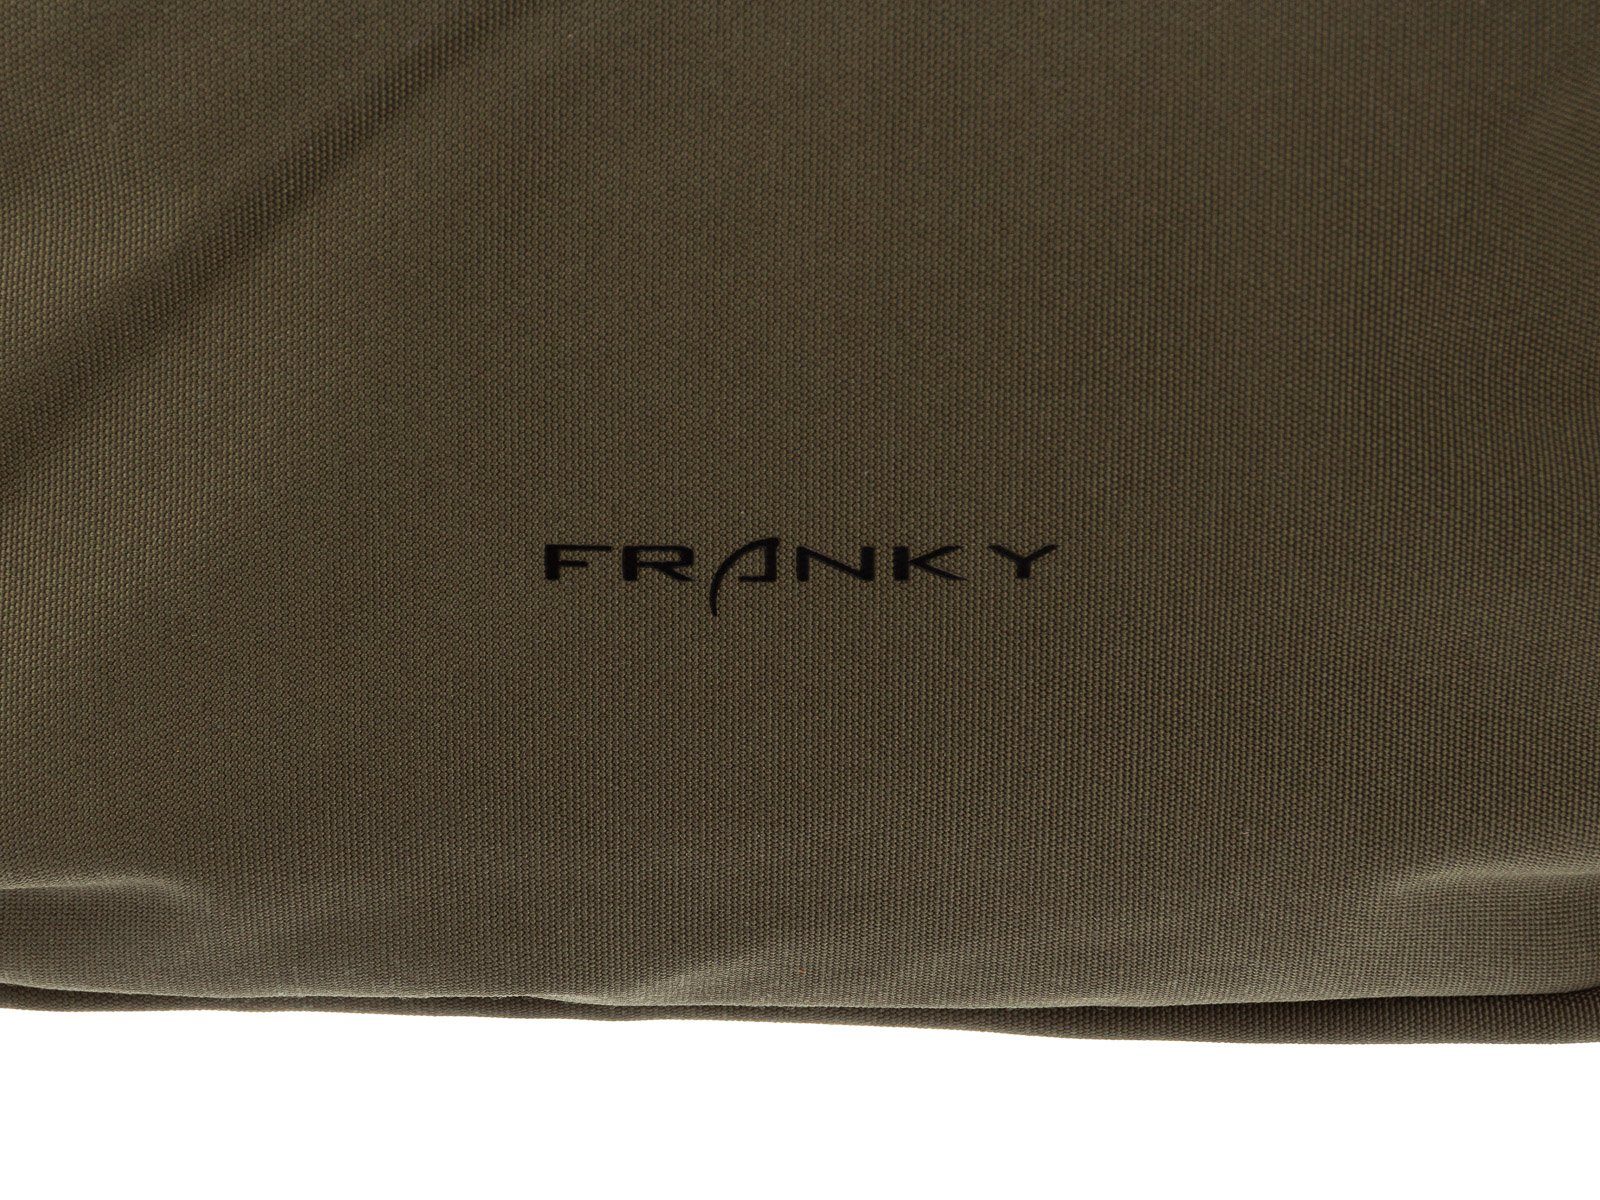 Notebookfach ca. Laptofach RS84 Freizeitrucksack mit 13", ca. lila Franky Franky Freizeitrucksack 13"